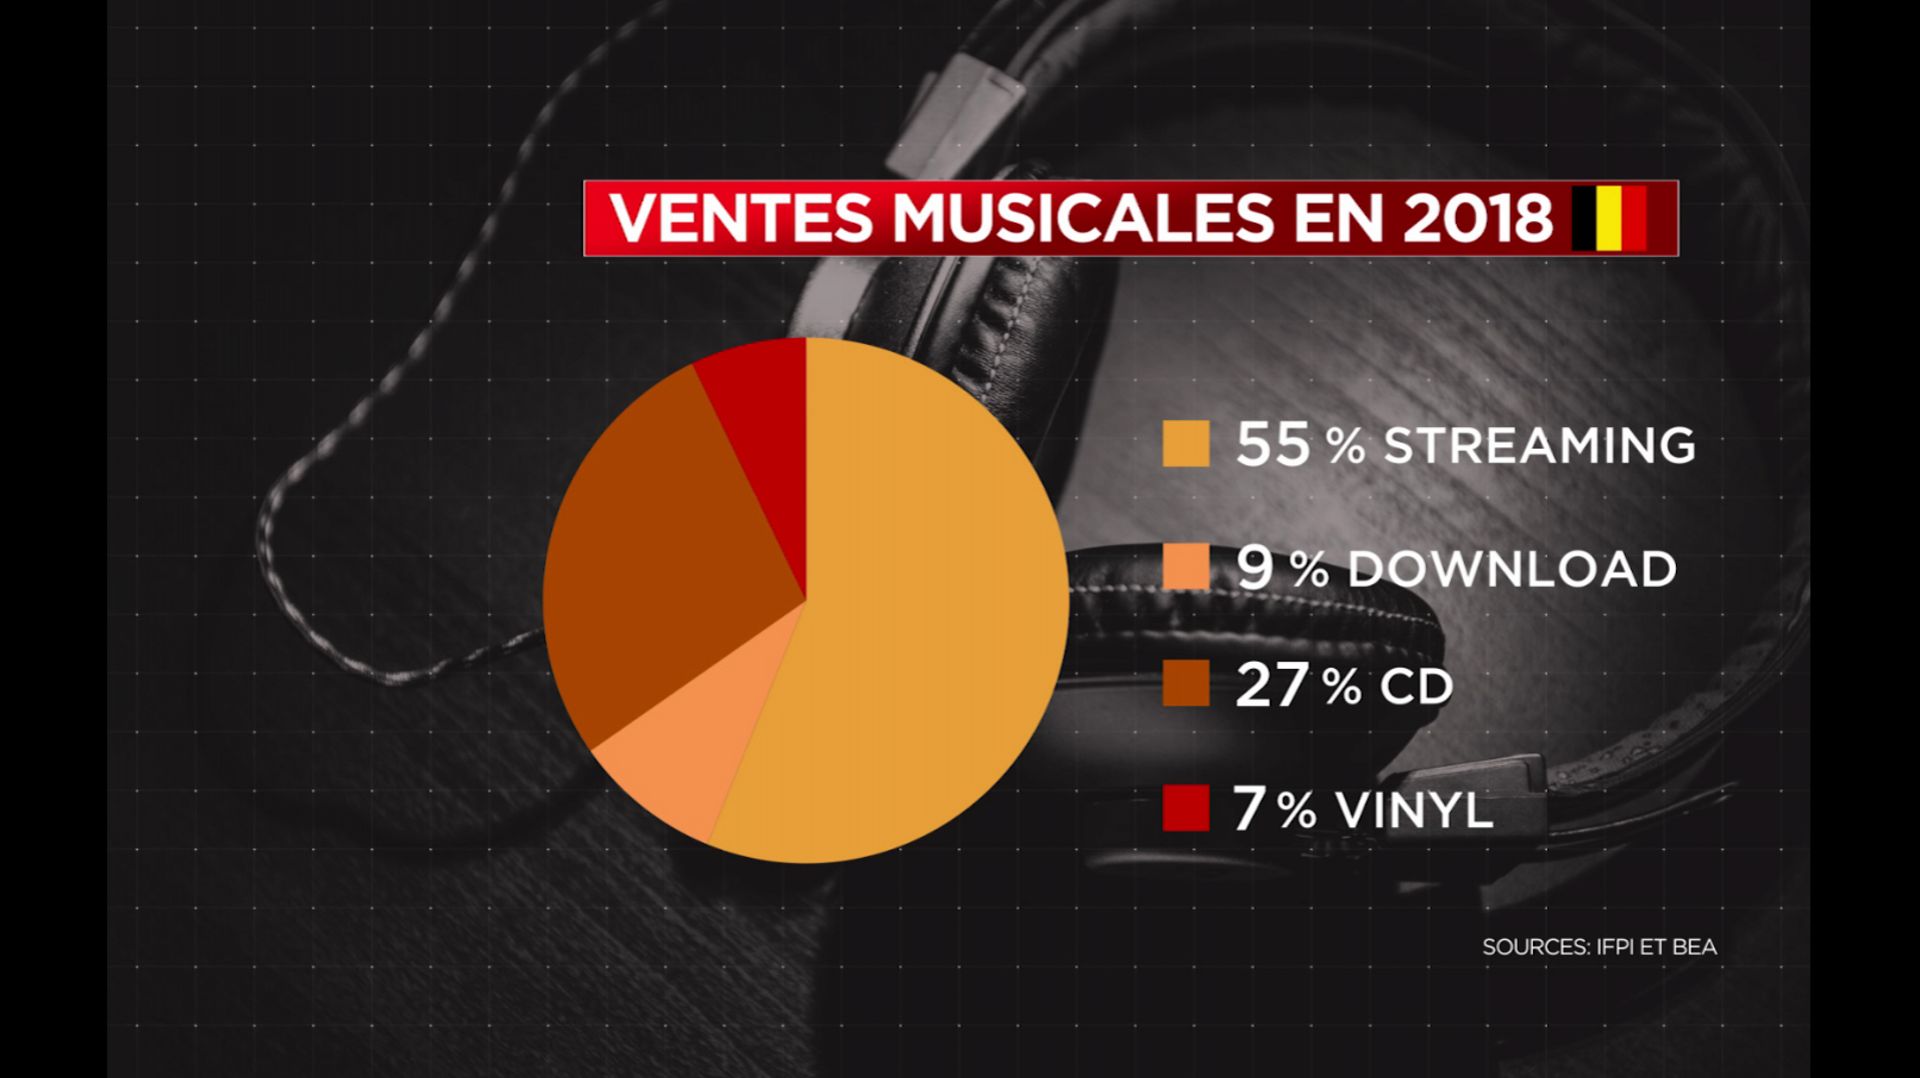 Le streaming audio représente, pour la première fois, plus de la moitié des ventes musicales belge